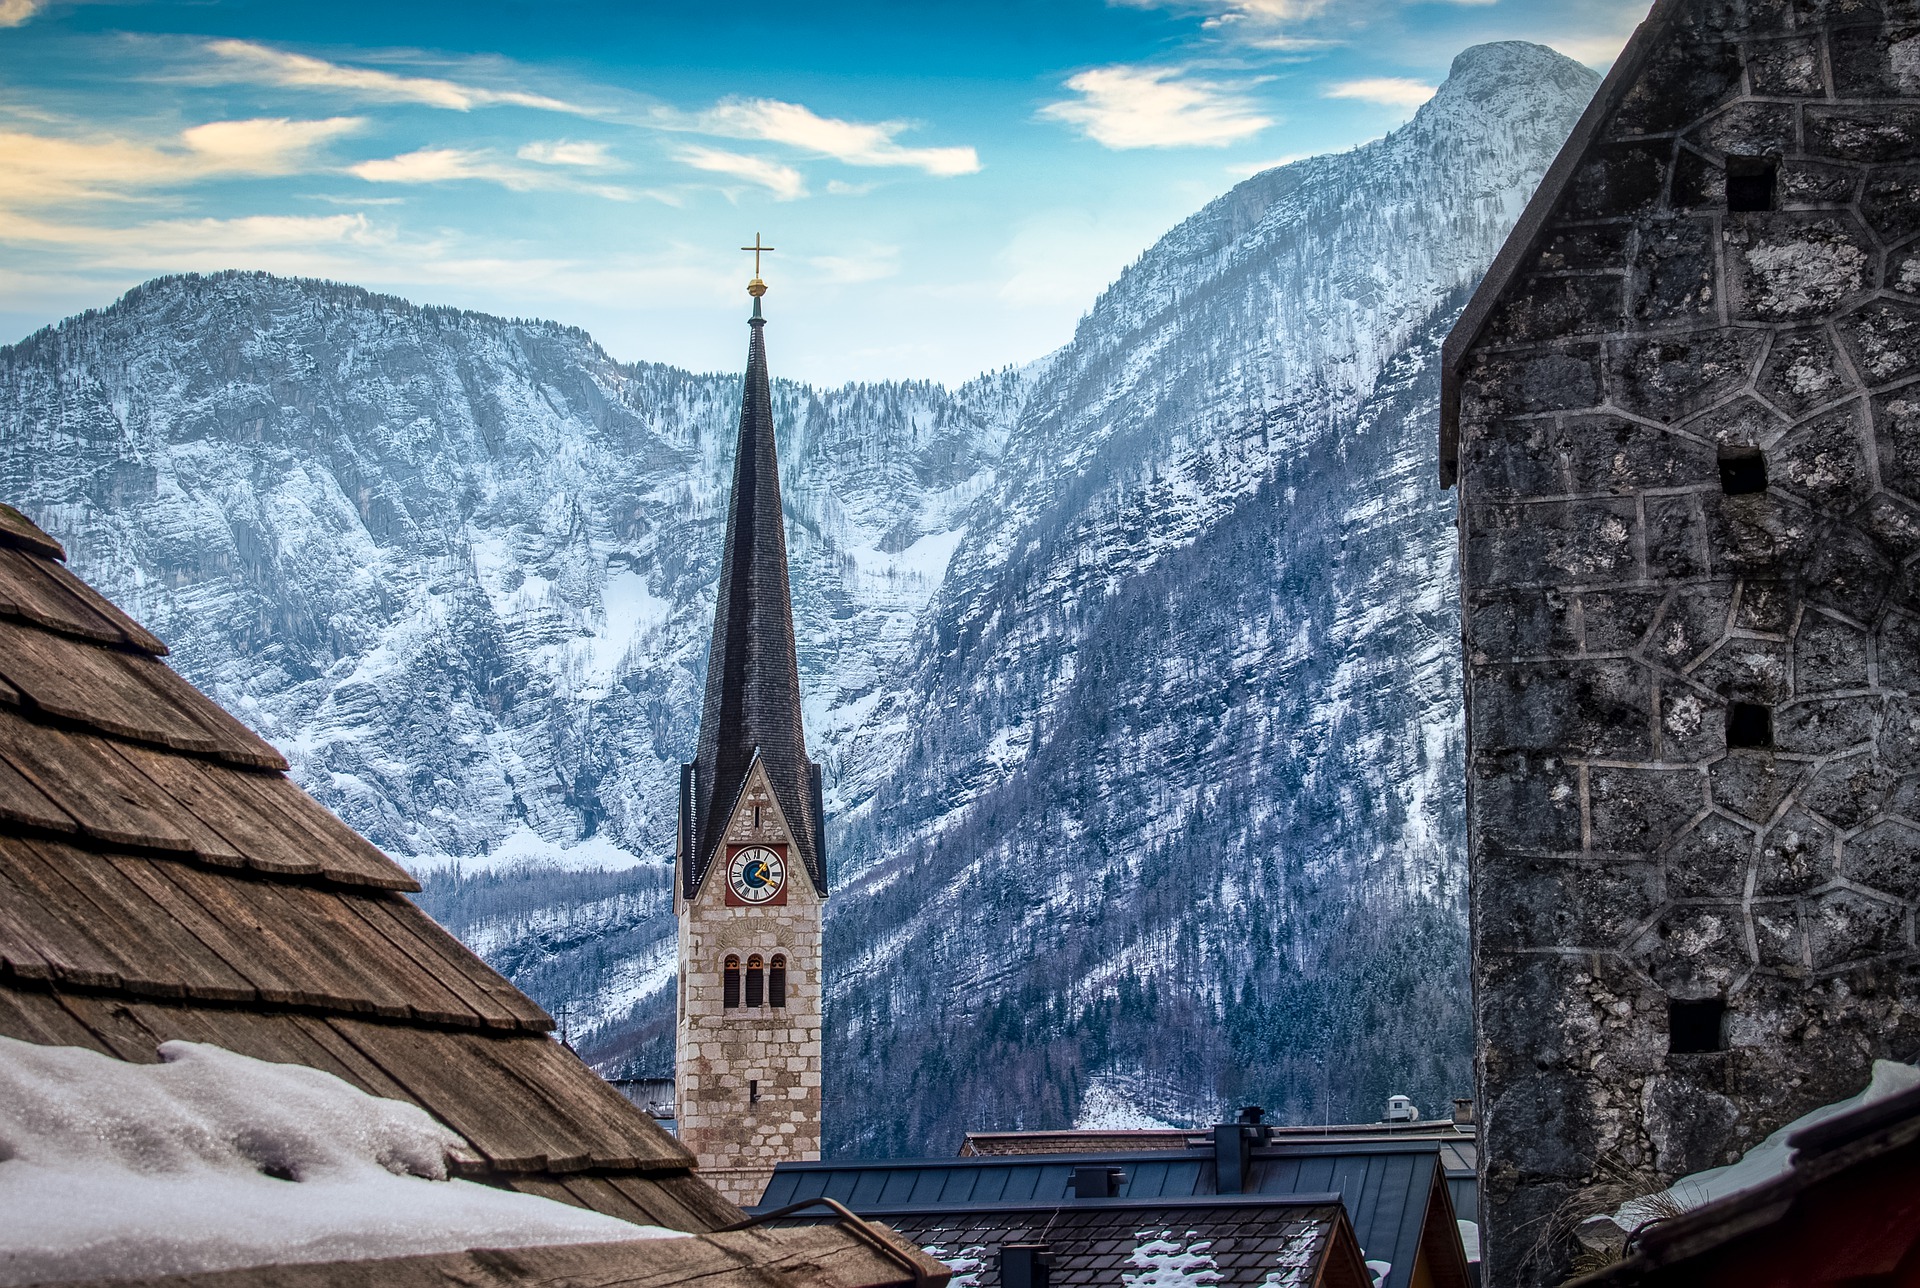 church at winter credit: Franz26 at Pixabay